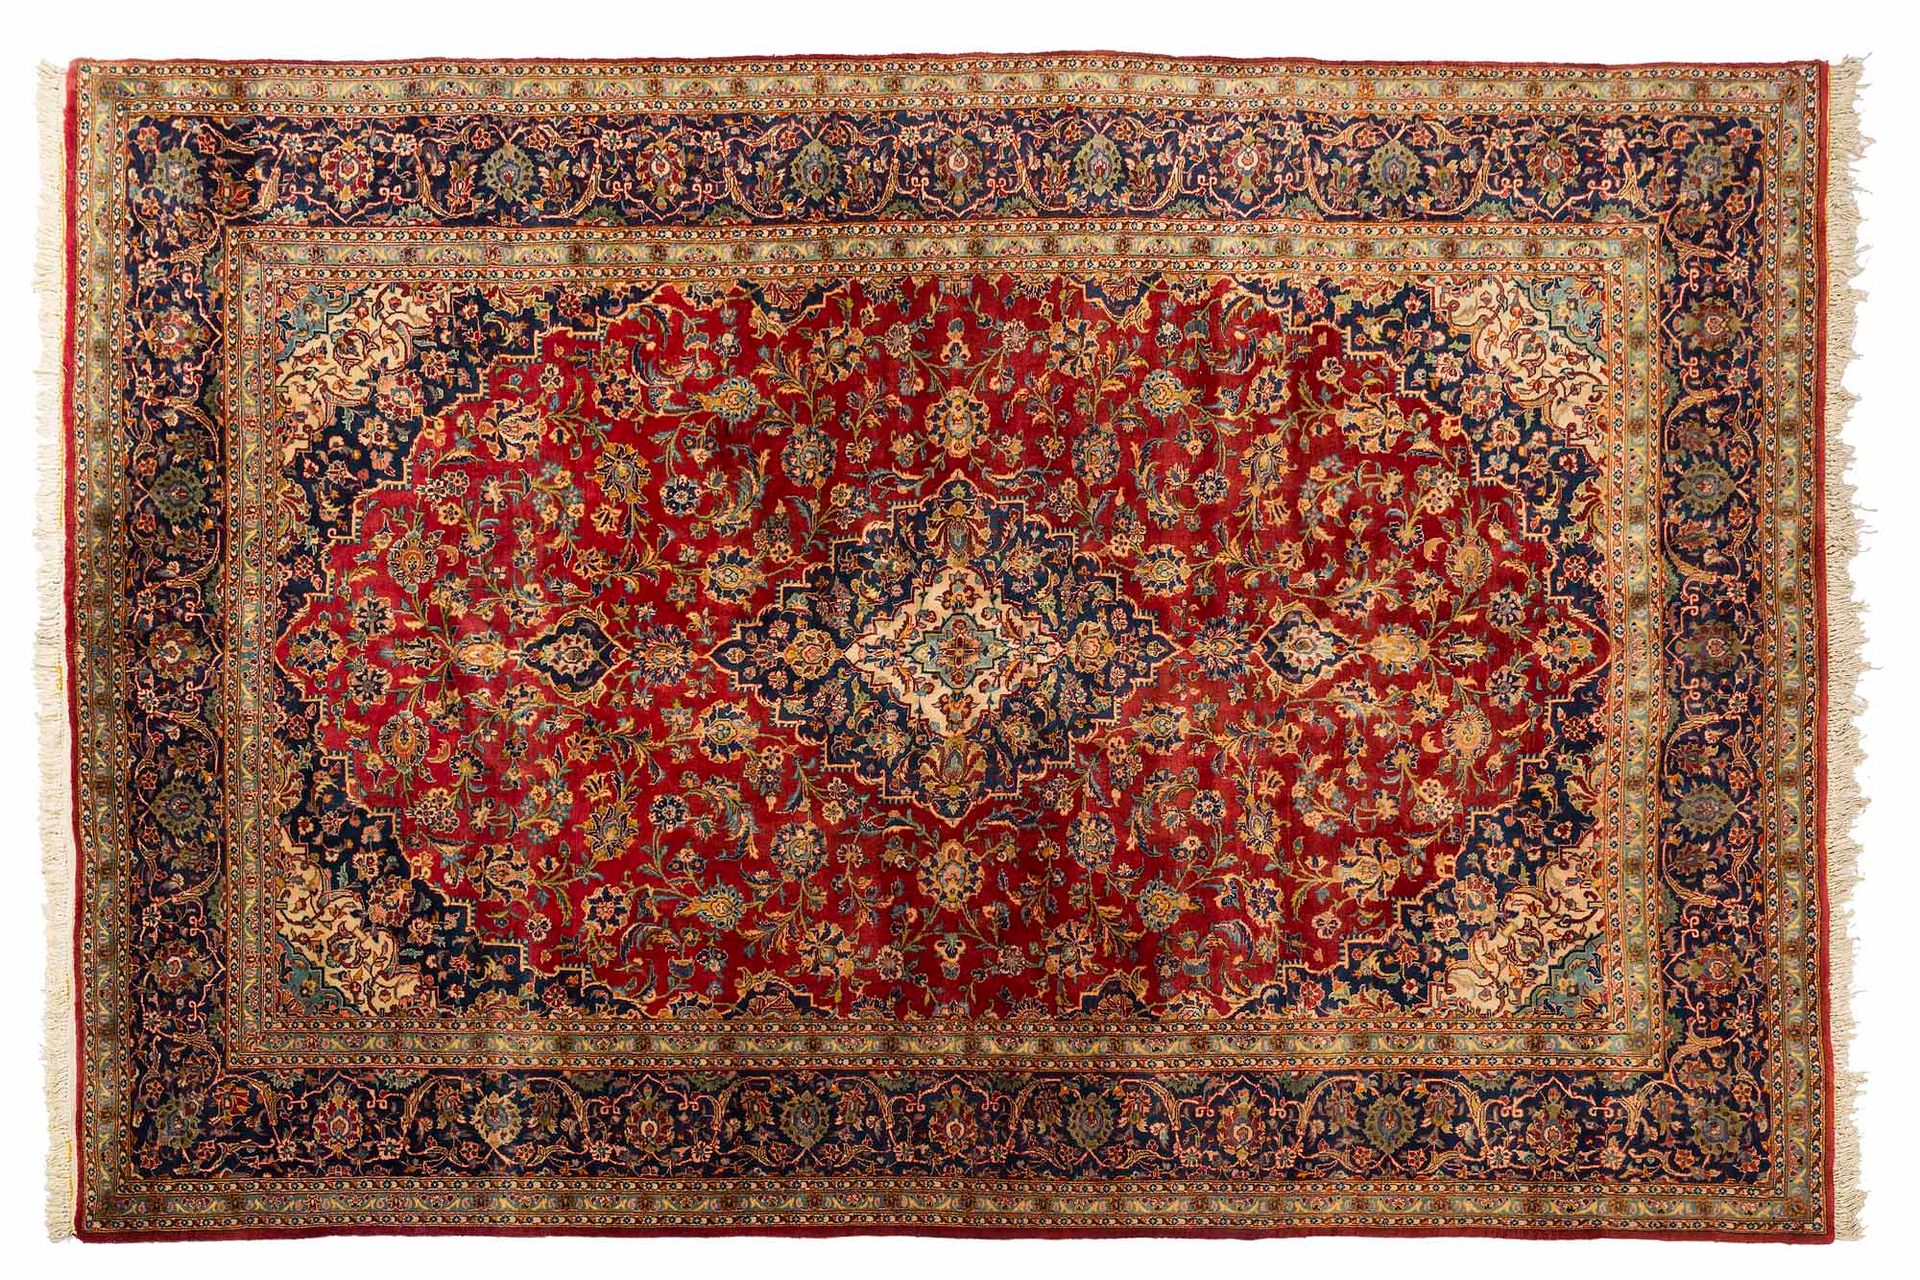 Null KACHAN地毯（伊朗），20世纪中期

尺寸：350 x 250厘米。

技术特点 : 羊毛丝绒，棉质基础。

覆盖着五颜六色花朵卷轴的砖地，承载着&hellip;